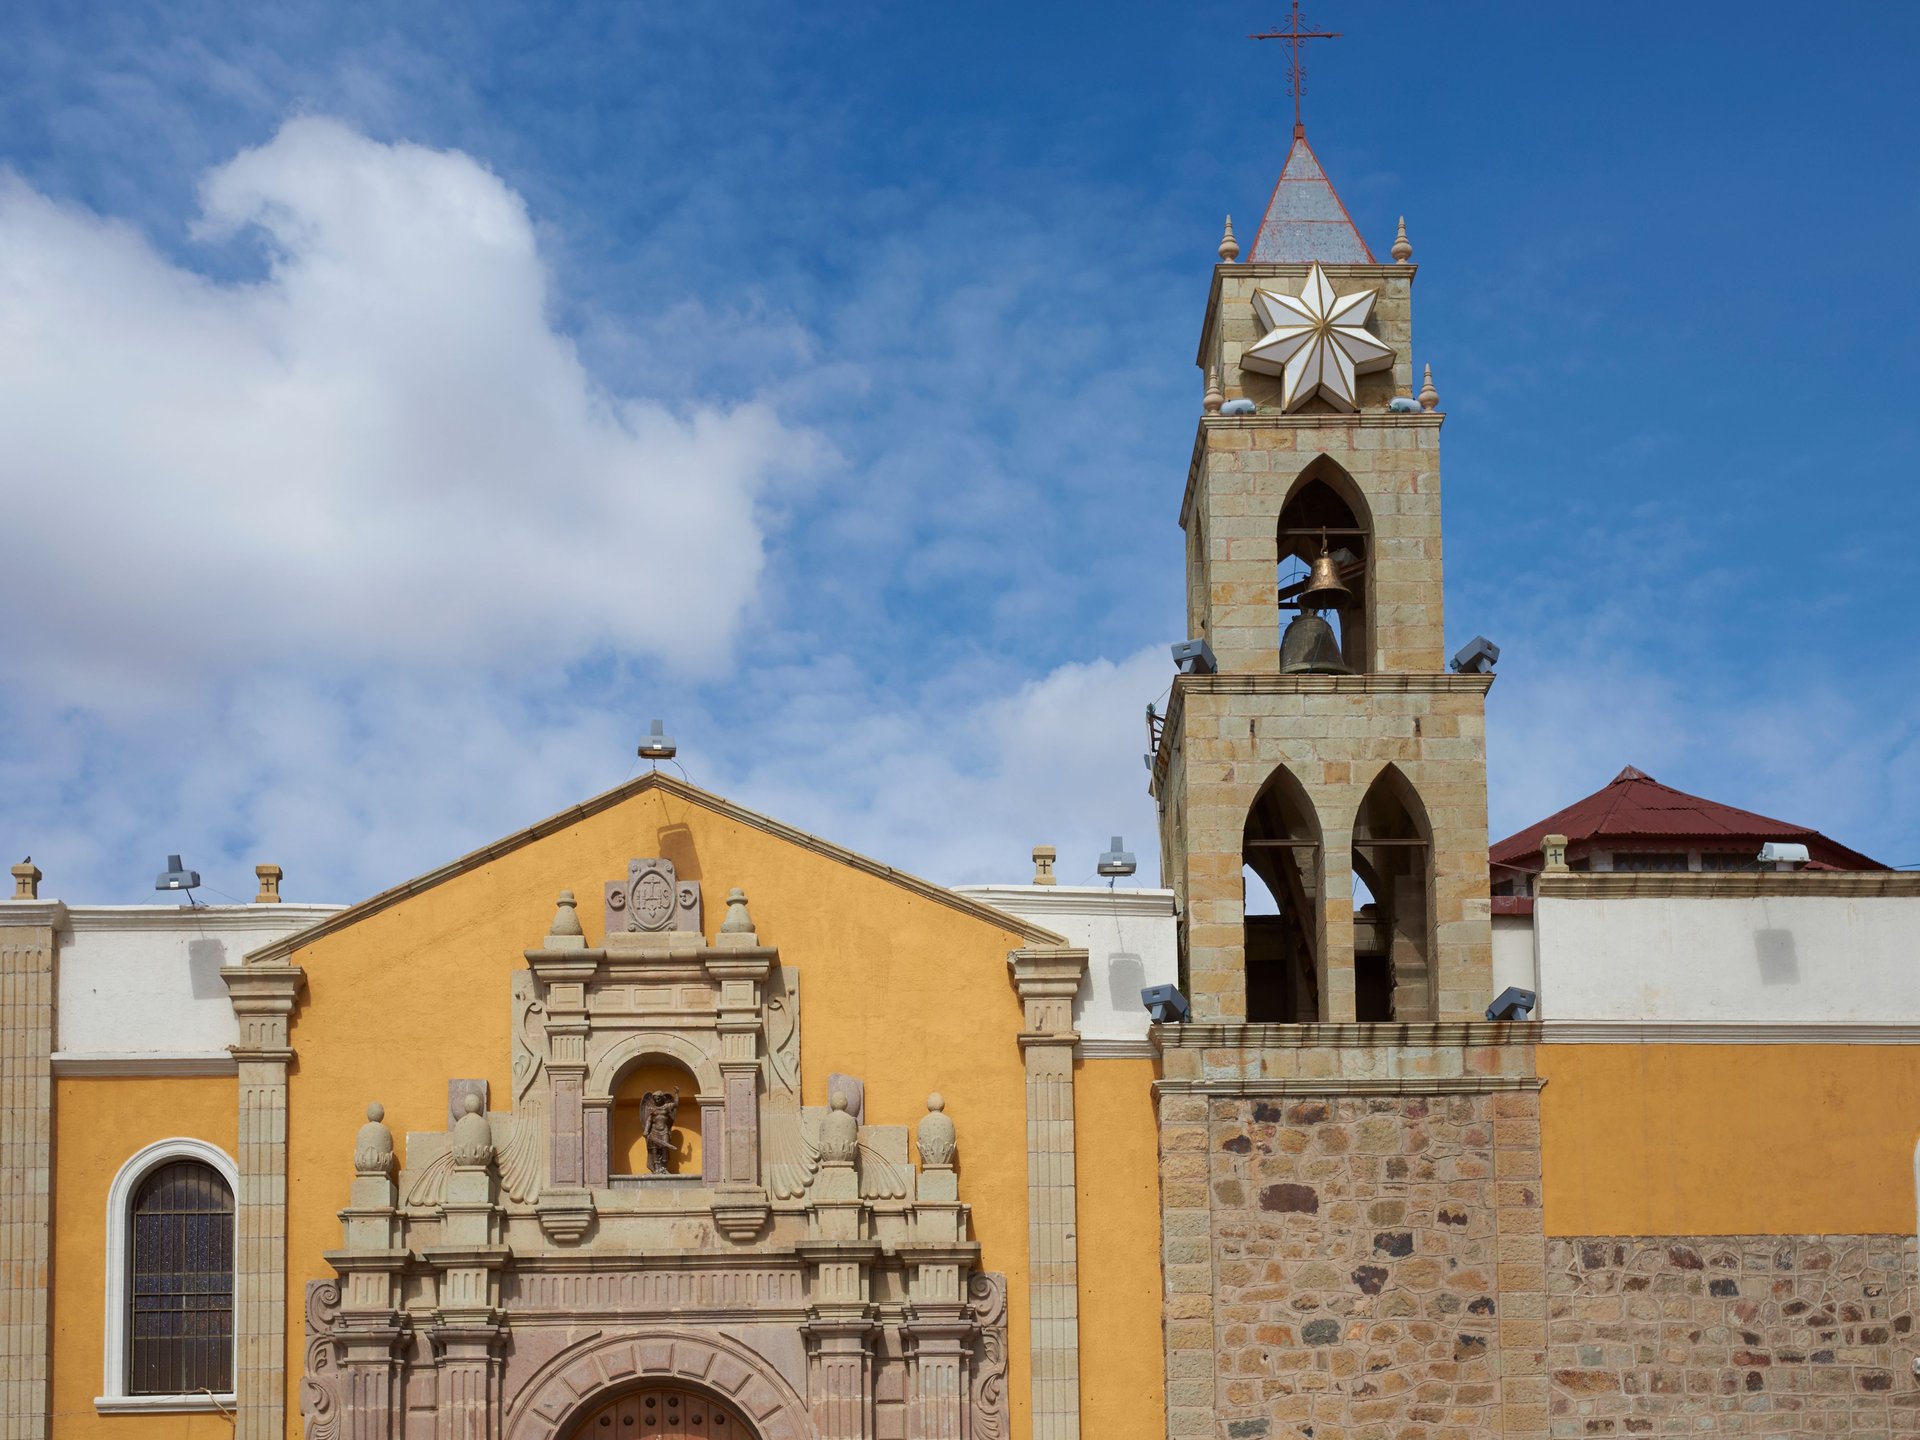 Eglise historique de la ville de Oruro en Bolivie